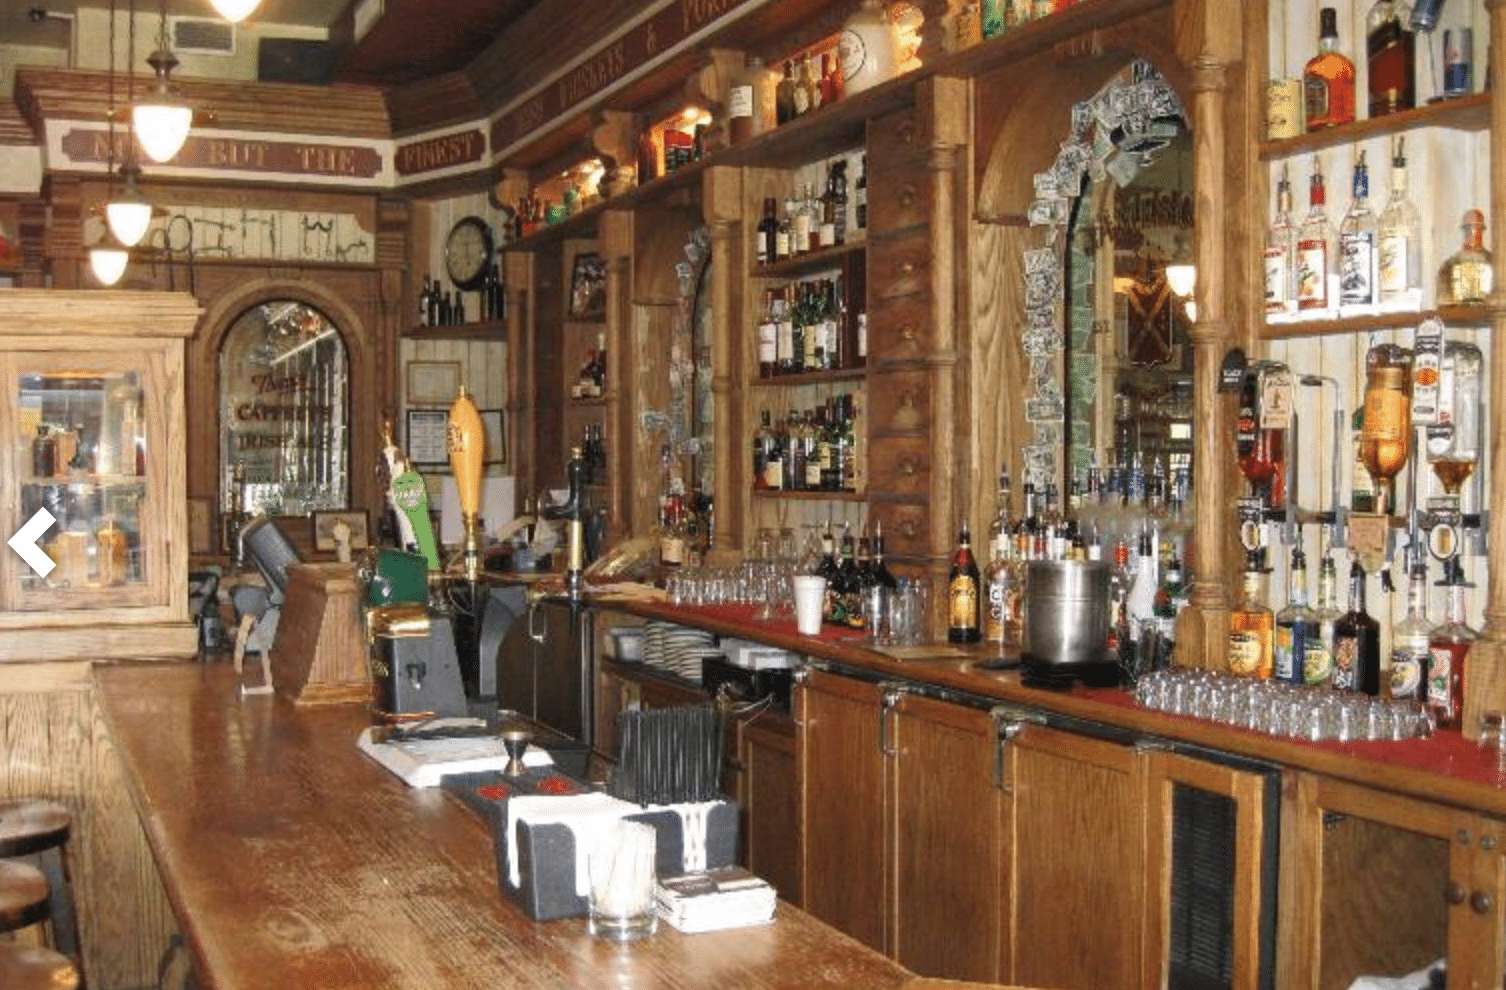 Rúla Búla Irish Bar in America